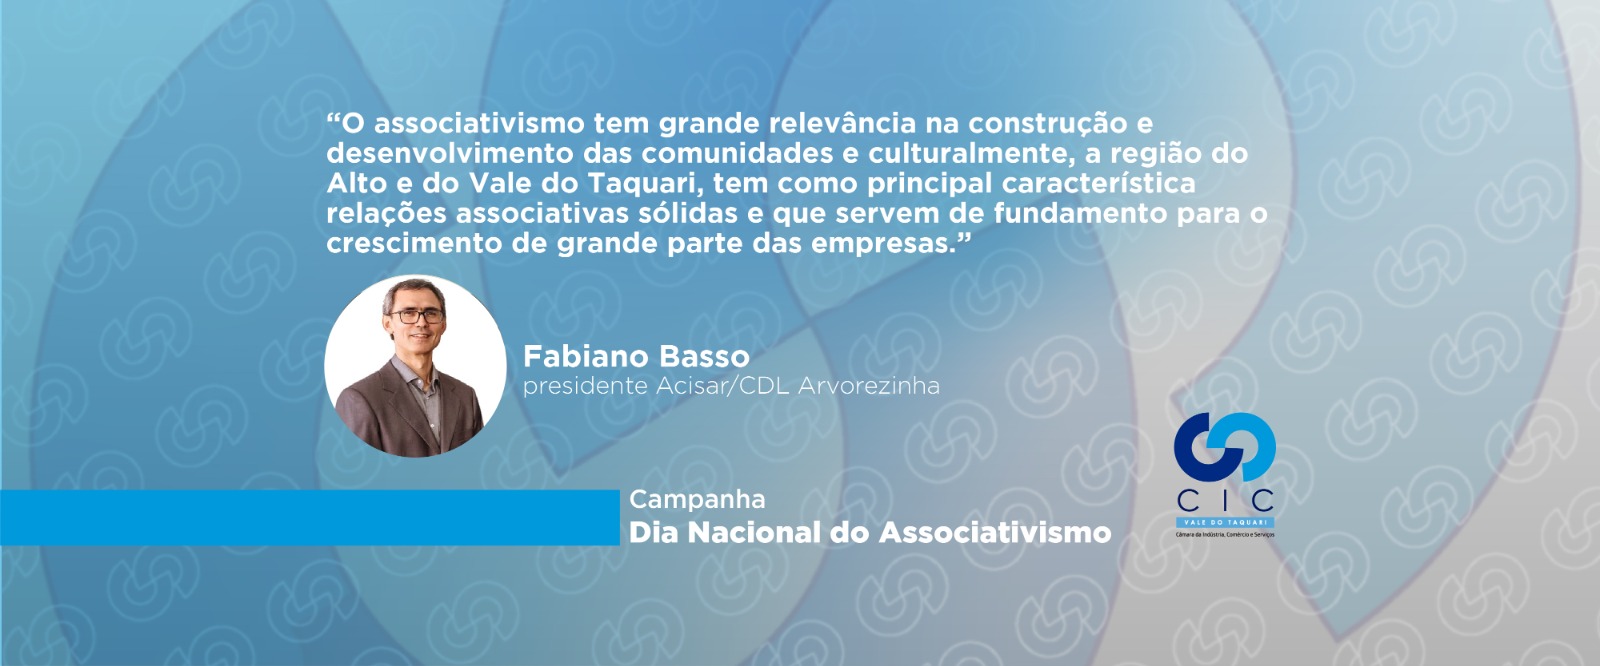 Arquivos fabricadebolovoalzira - Alshop - Associação Brasileira de